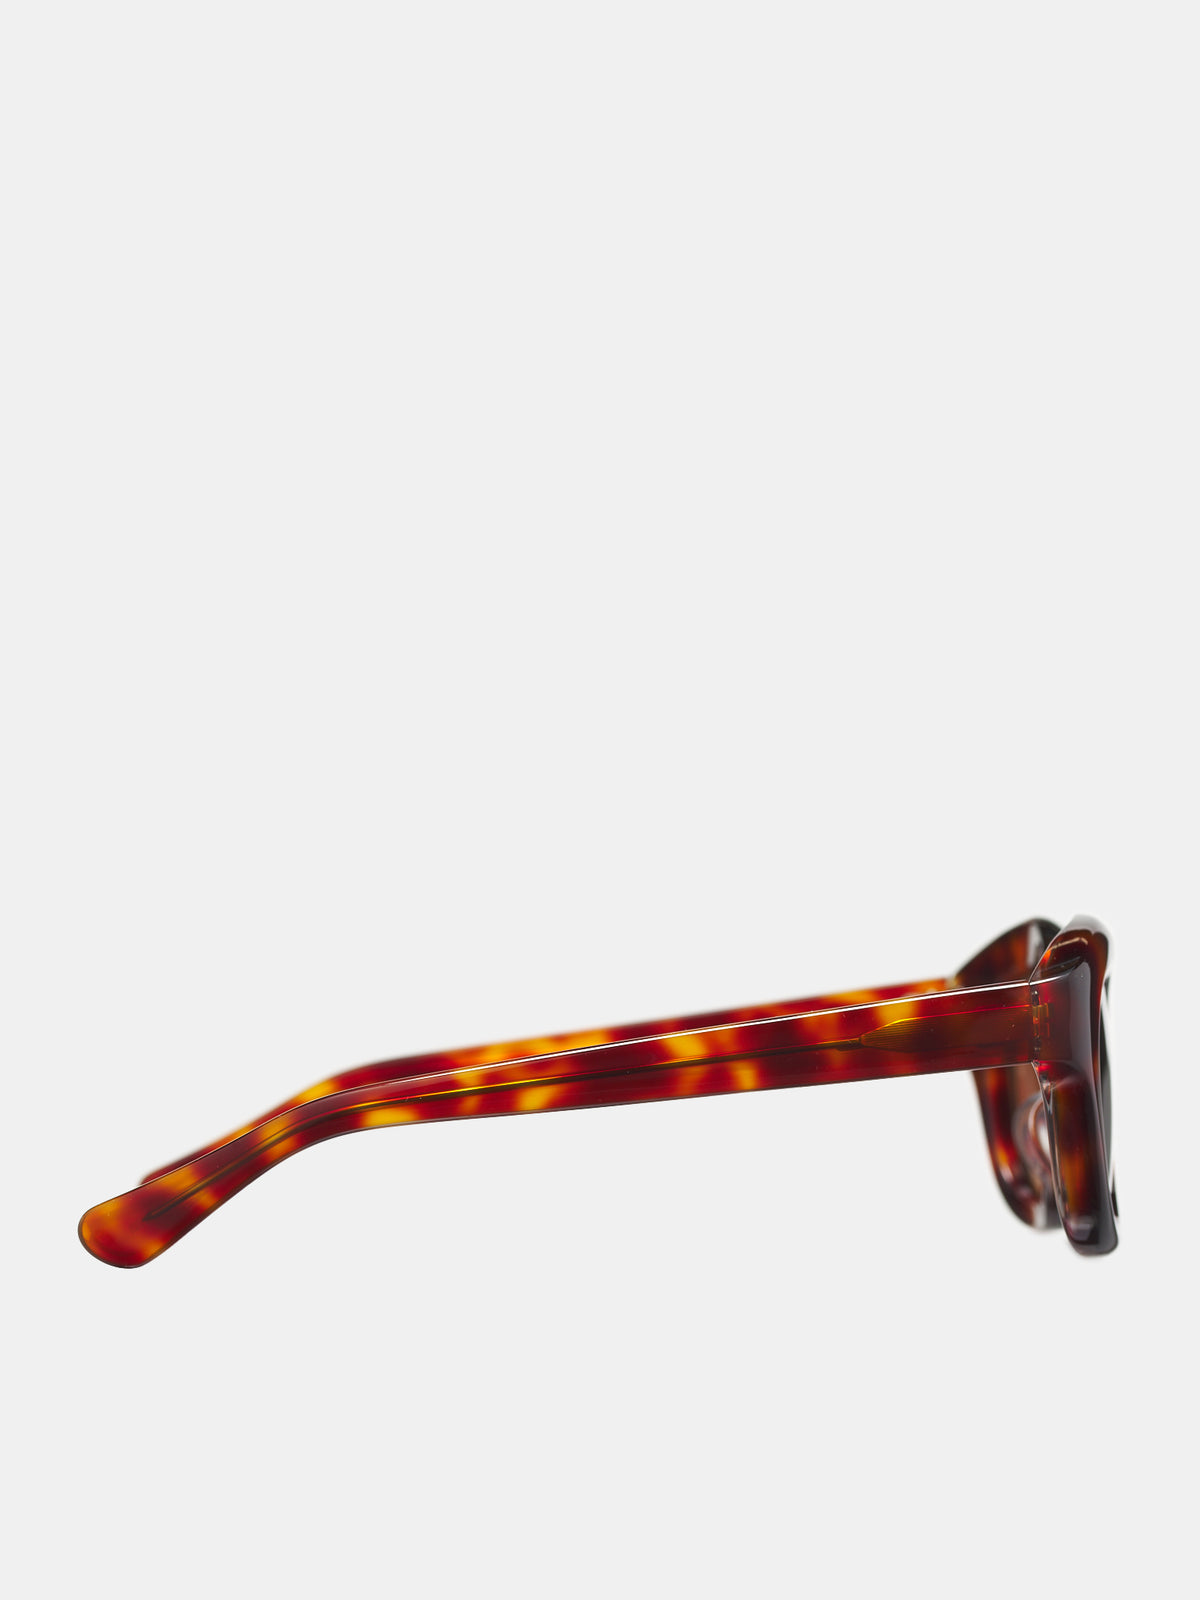 Hook Sunglasses (HOOK-ORANGE-TORTSHELL-AMBER5)